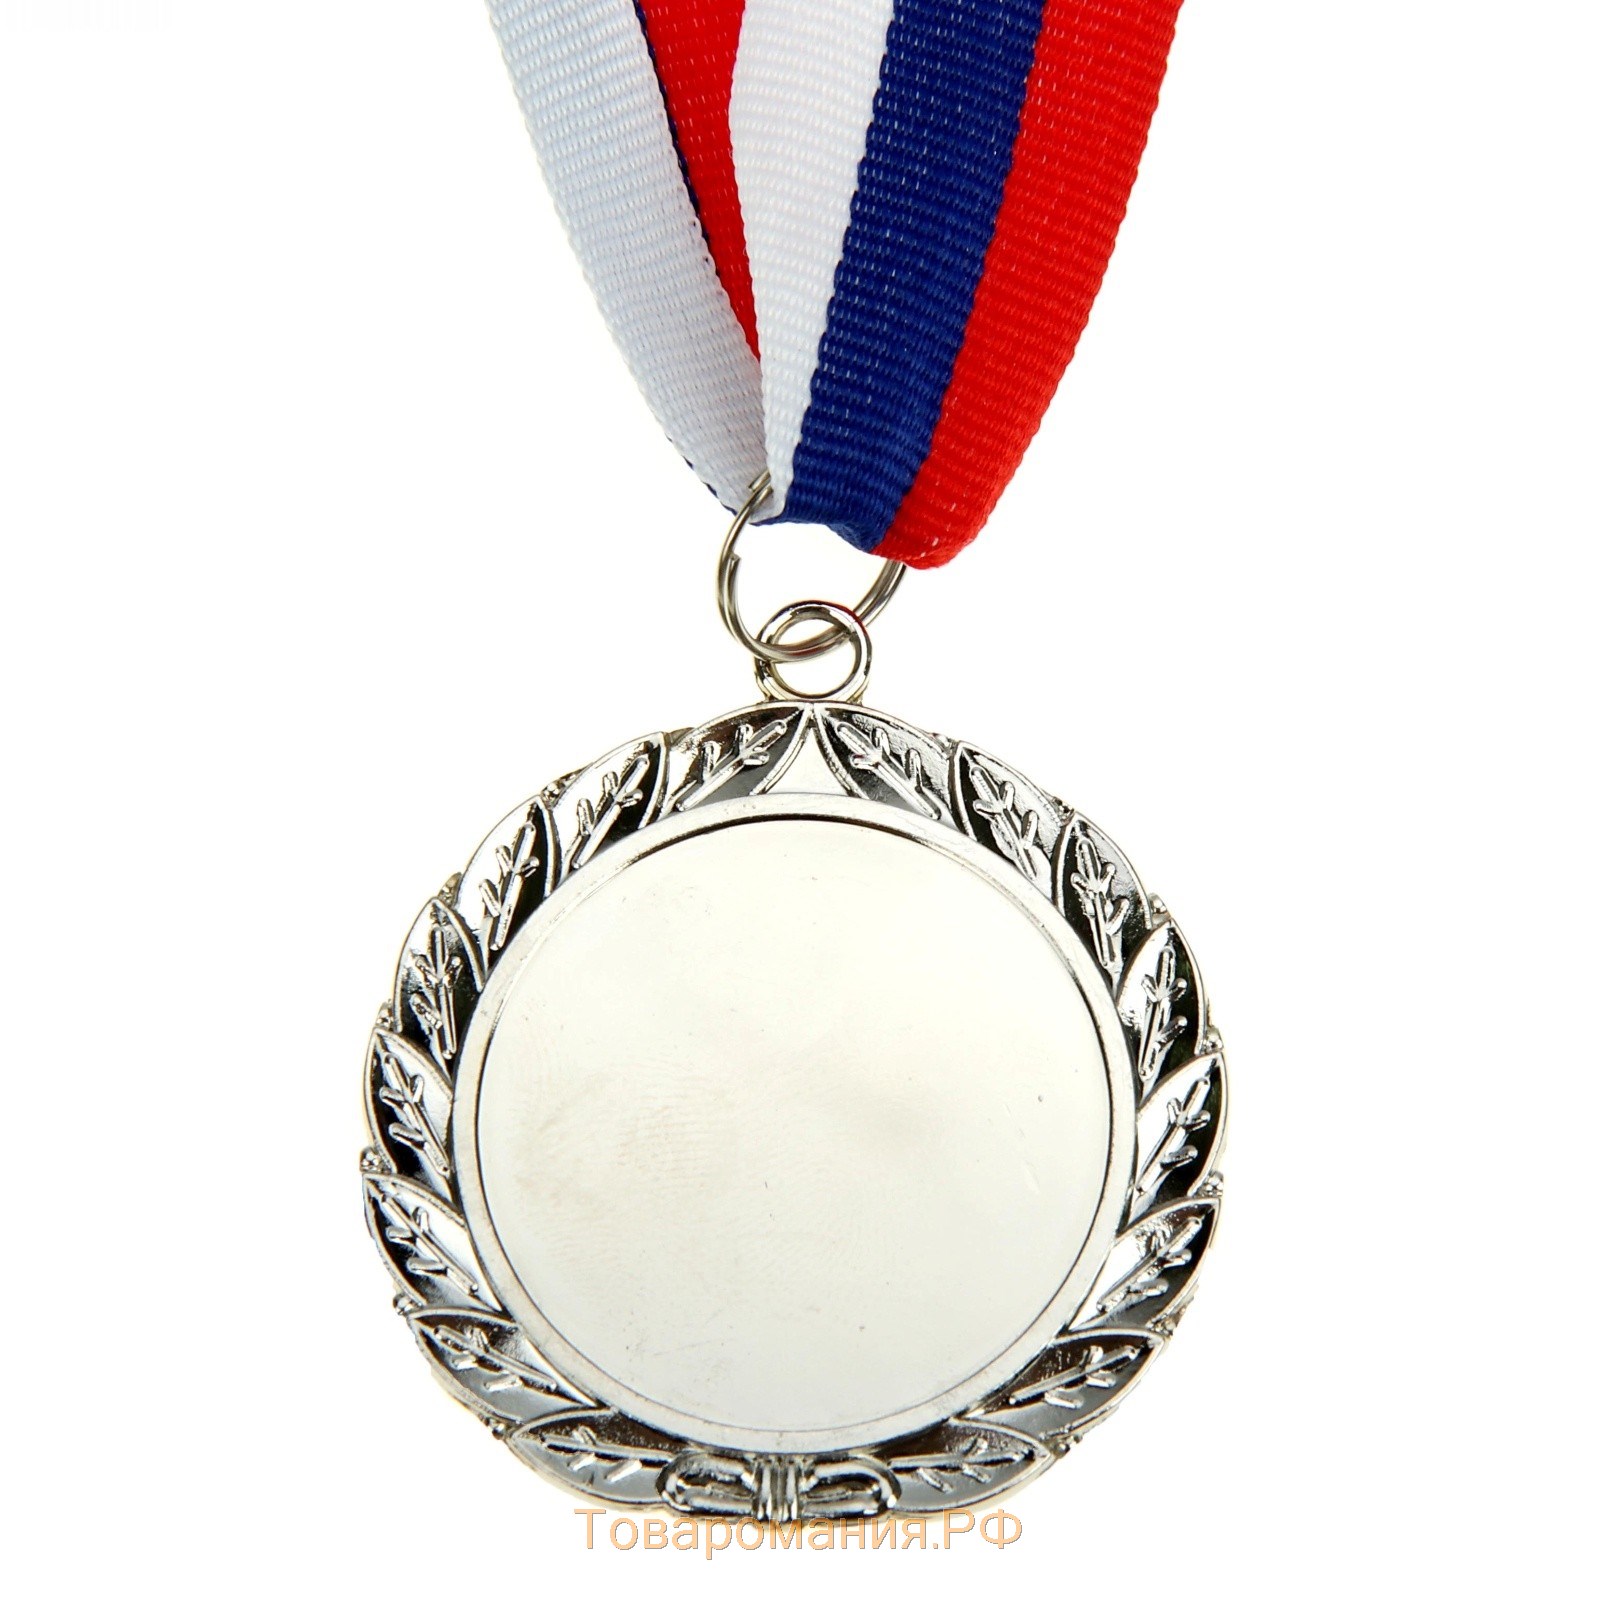 Медаль призовая 001, d= 5 см. 2 место. Цвет серебро. С лентой